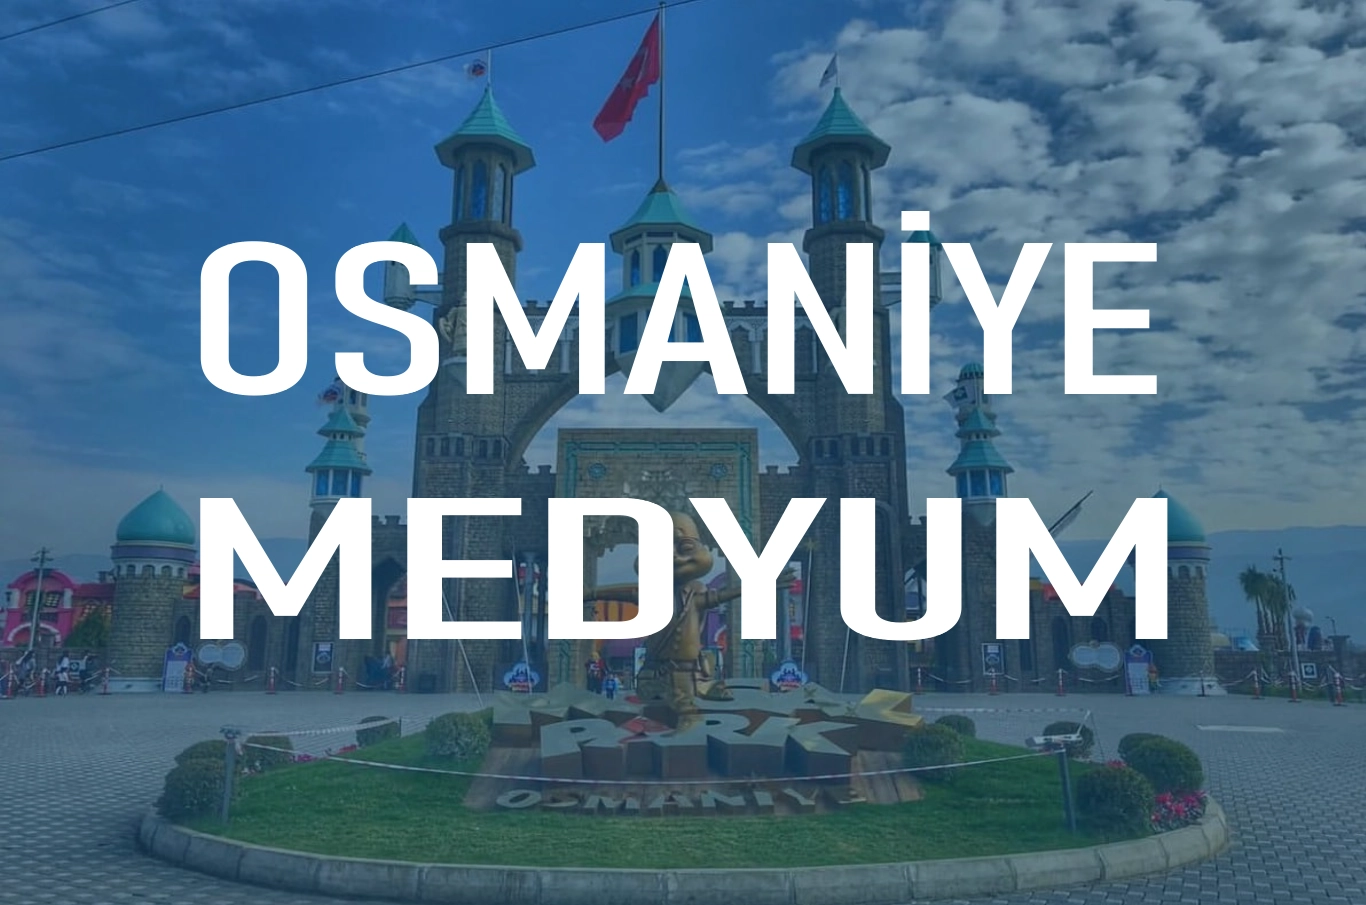 Osmaniye Medyum